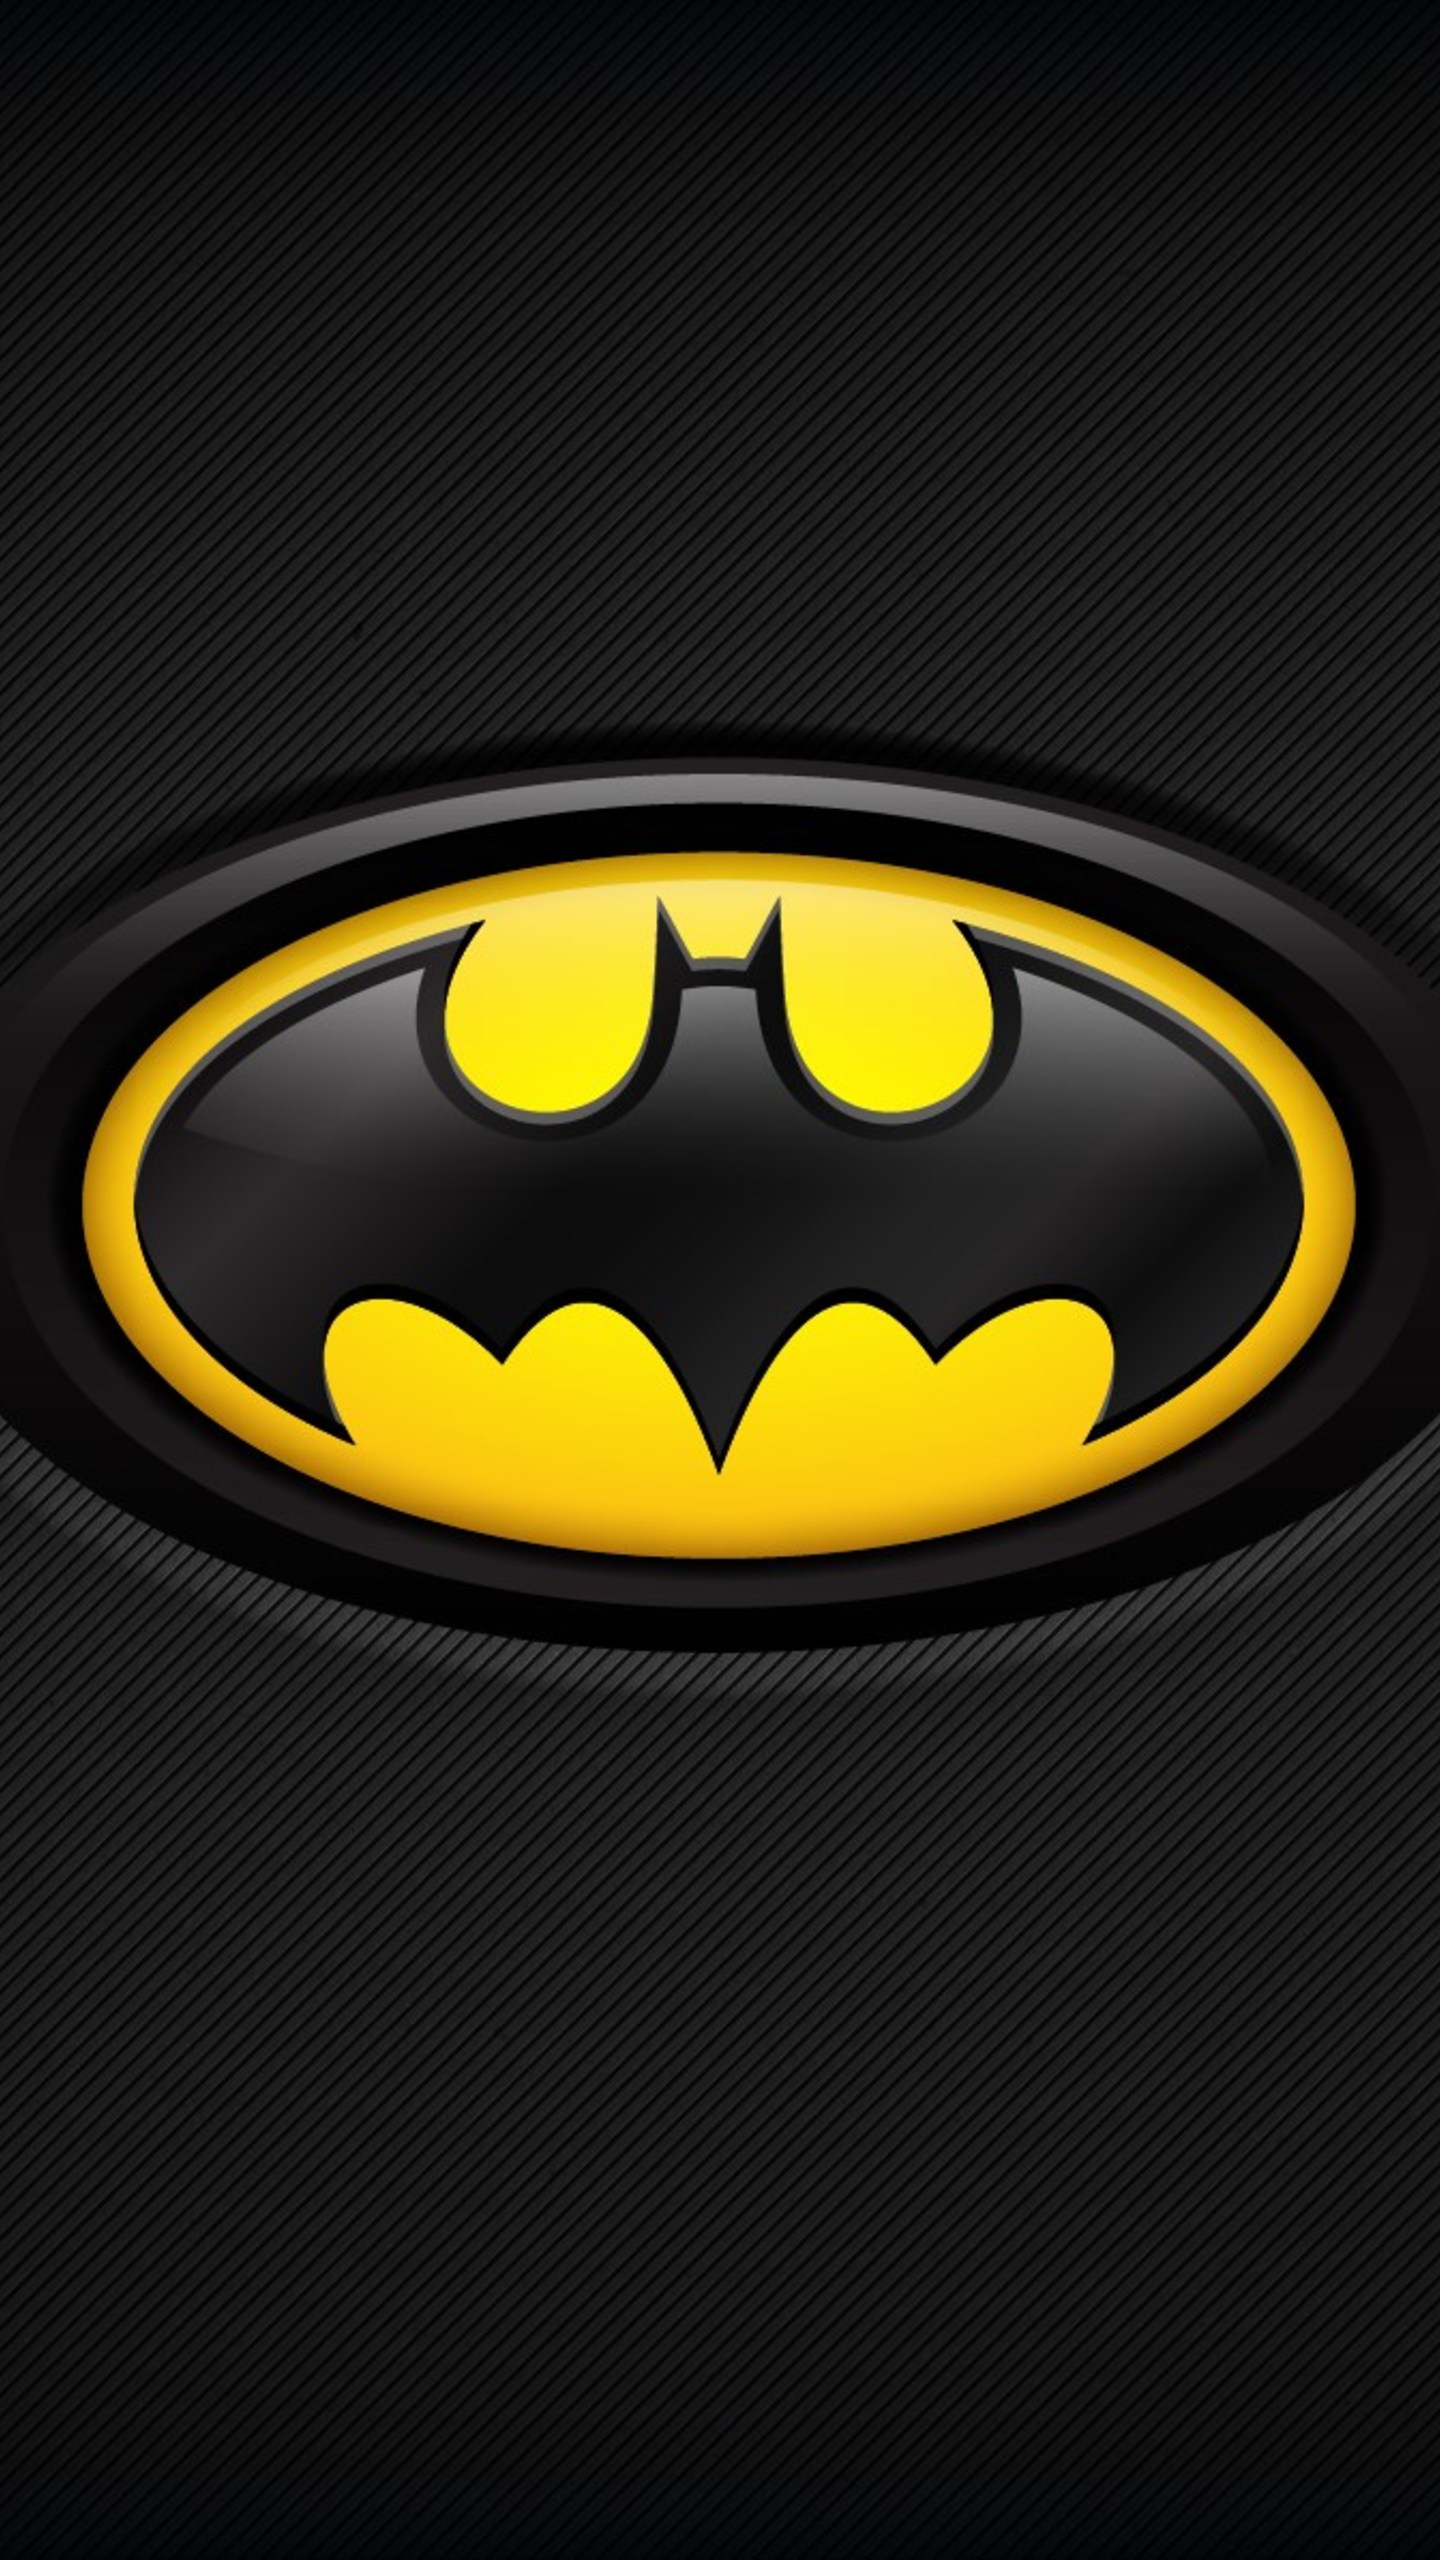 Fondos de Pantalla Logo de Batman Negro y Amarillo, Imágenes y Fotos Gratis